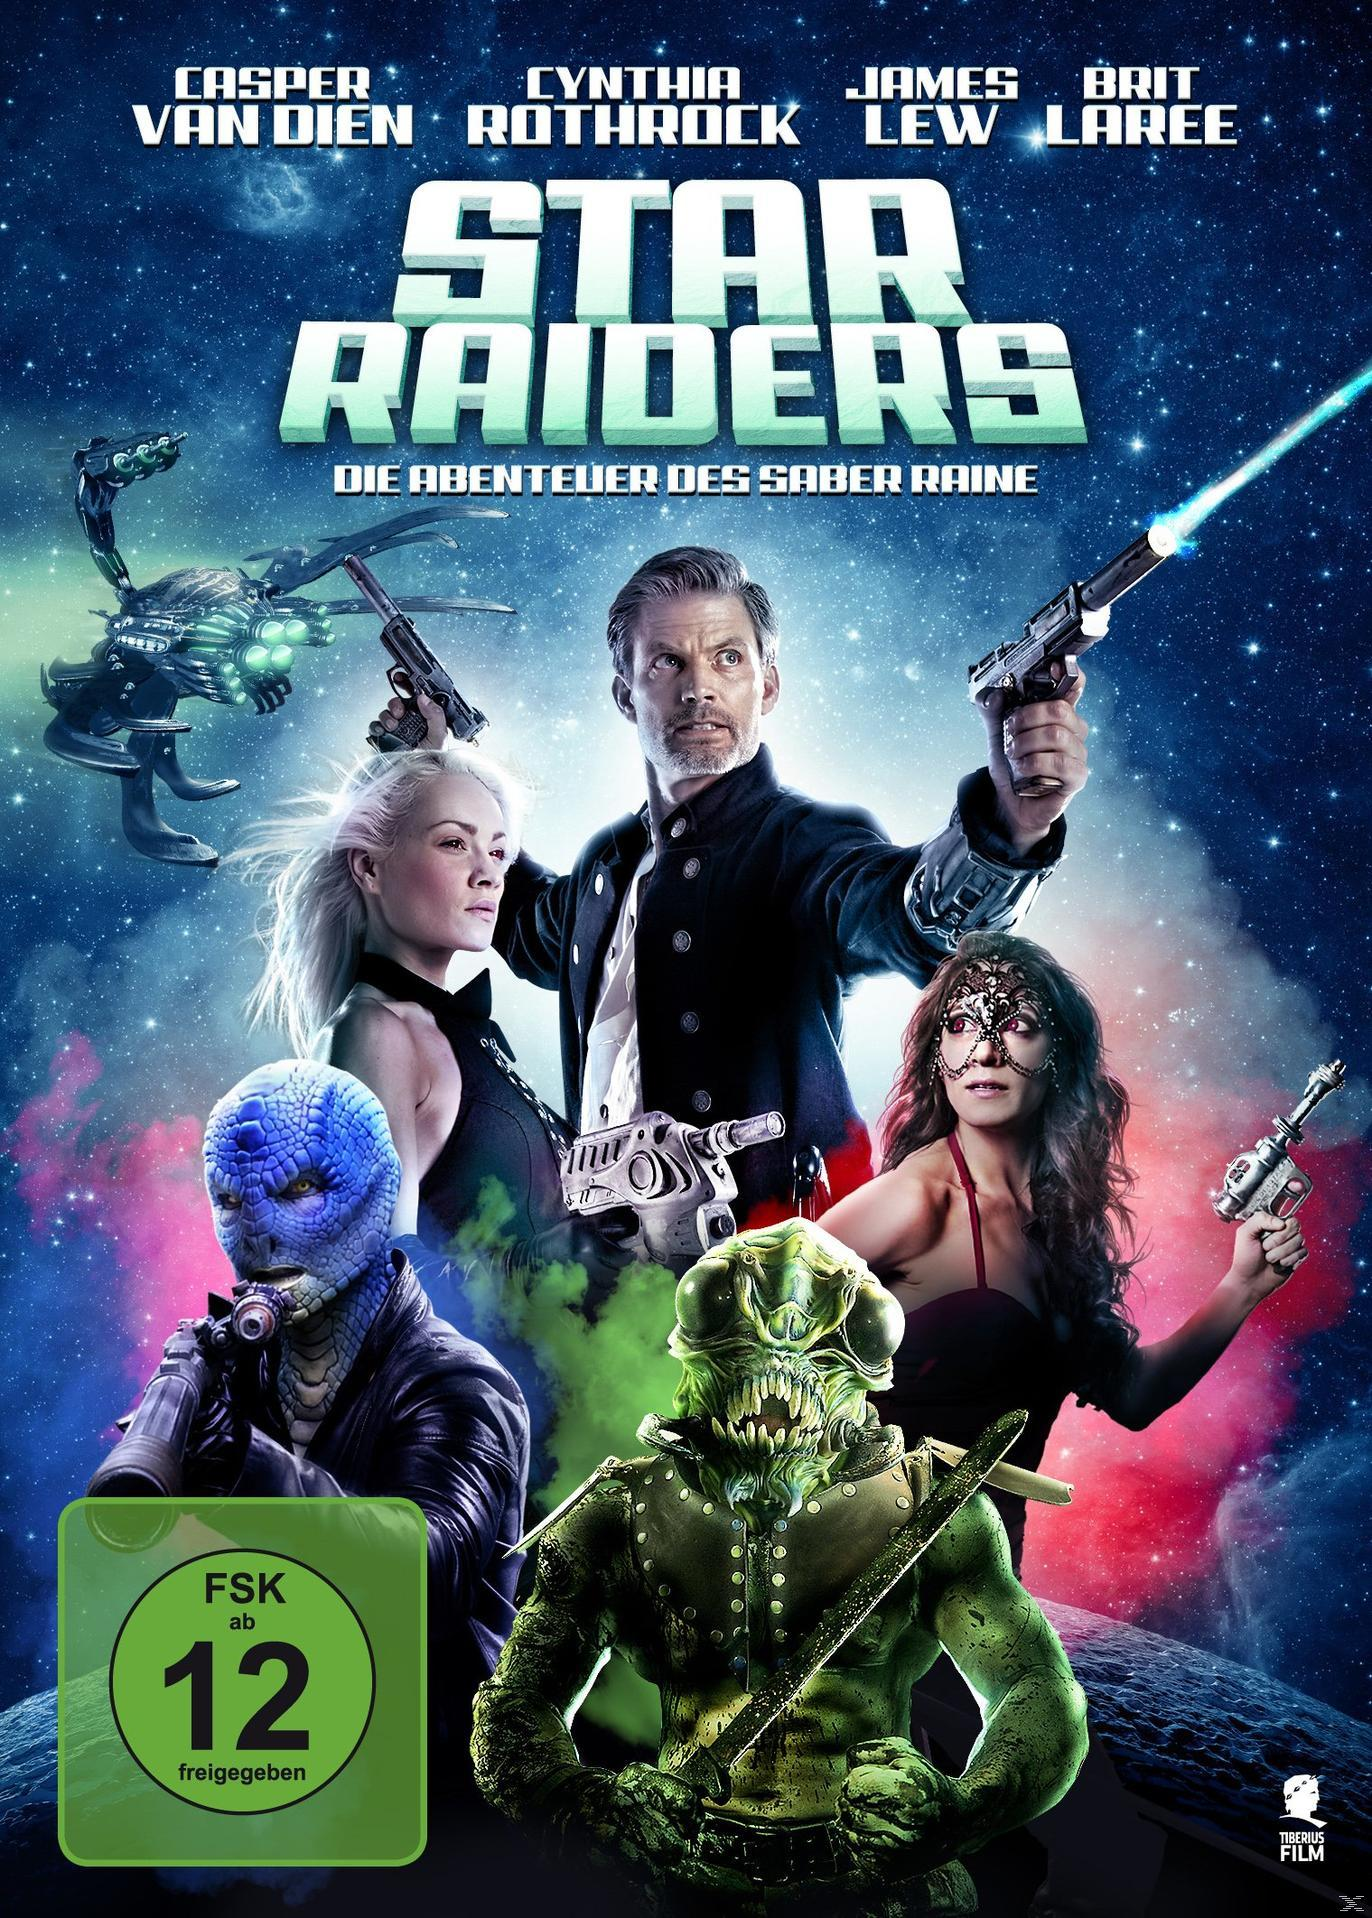 Raiders Raine - Die Saber Star des DVD Abenteuer